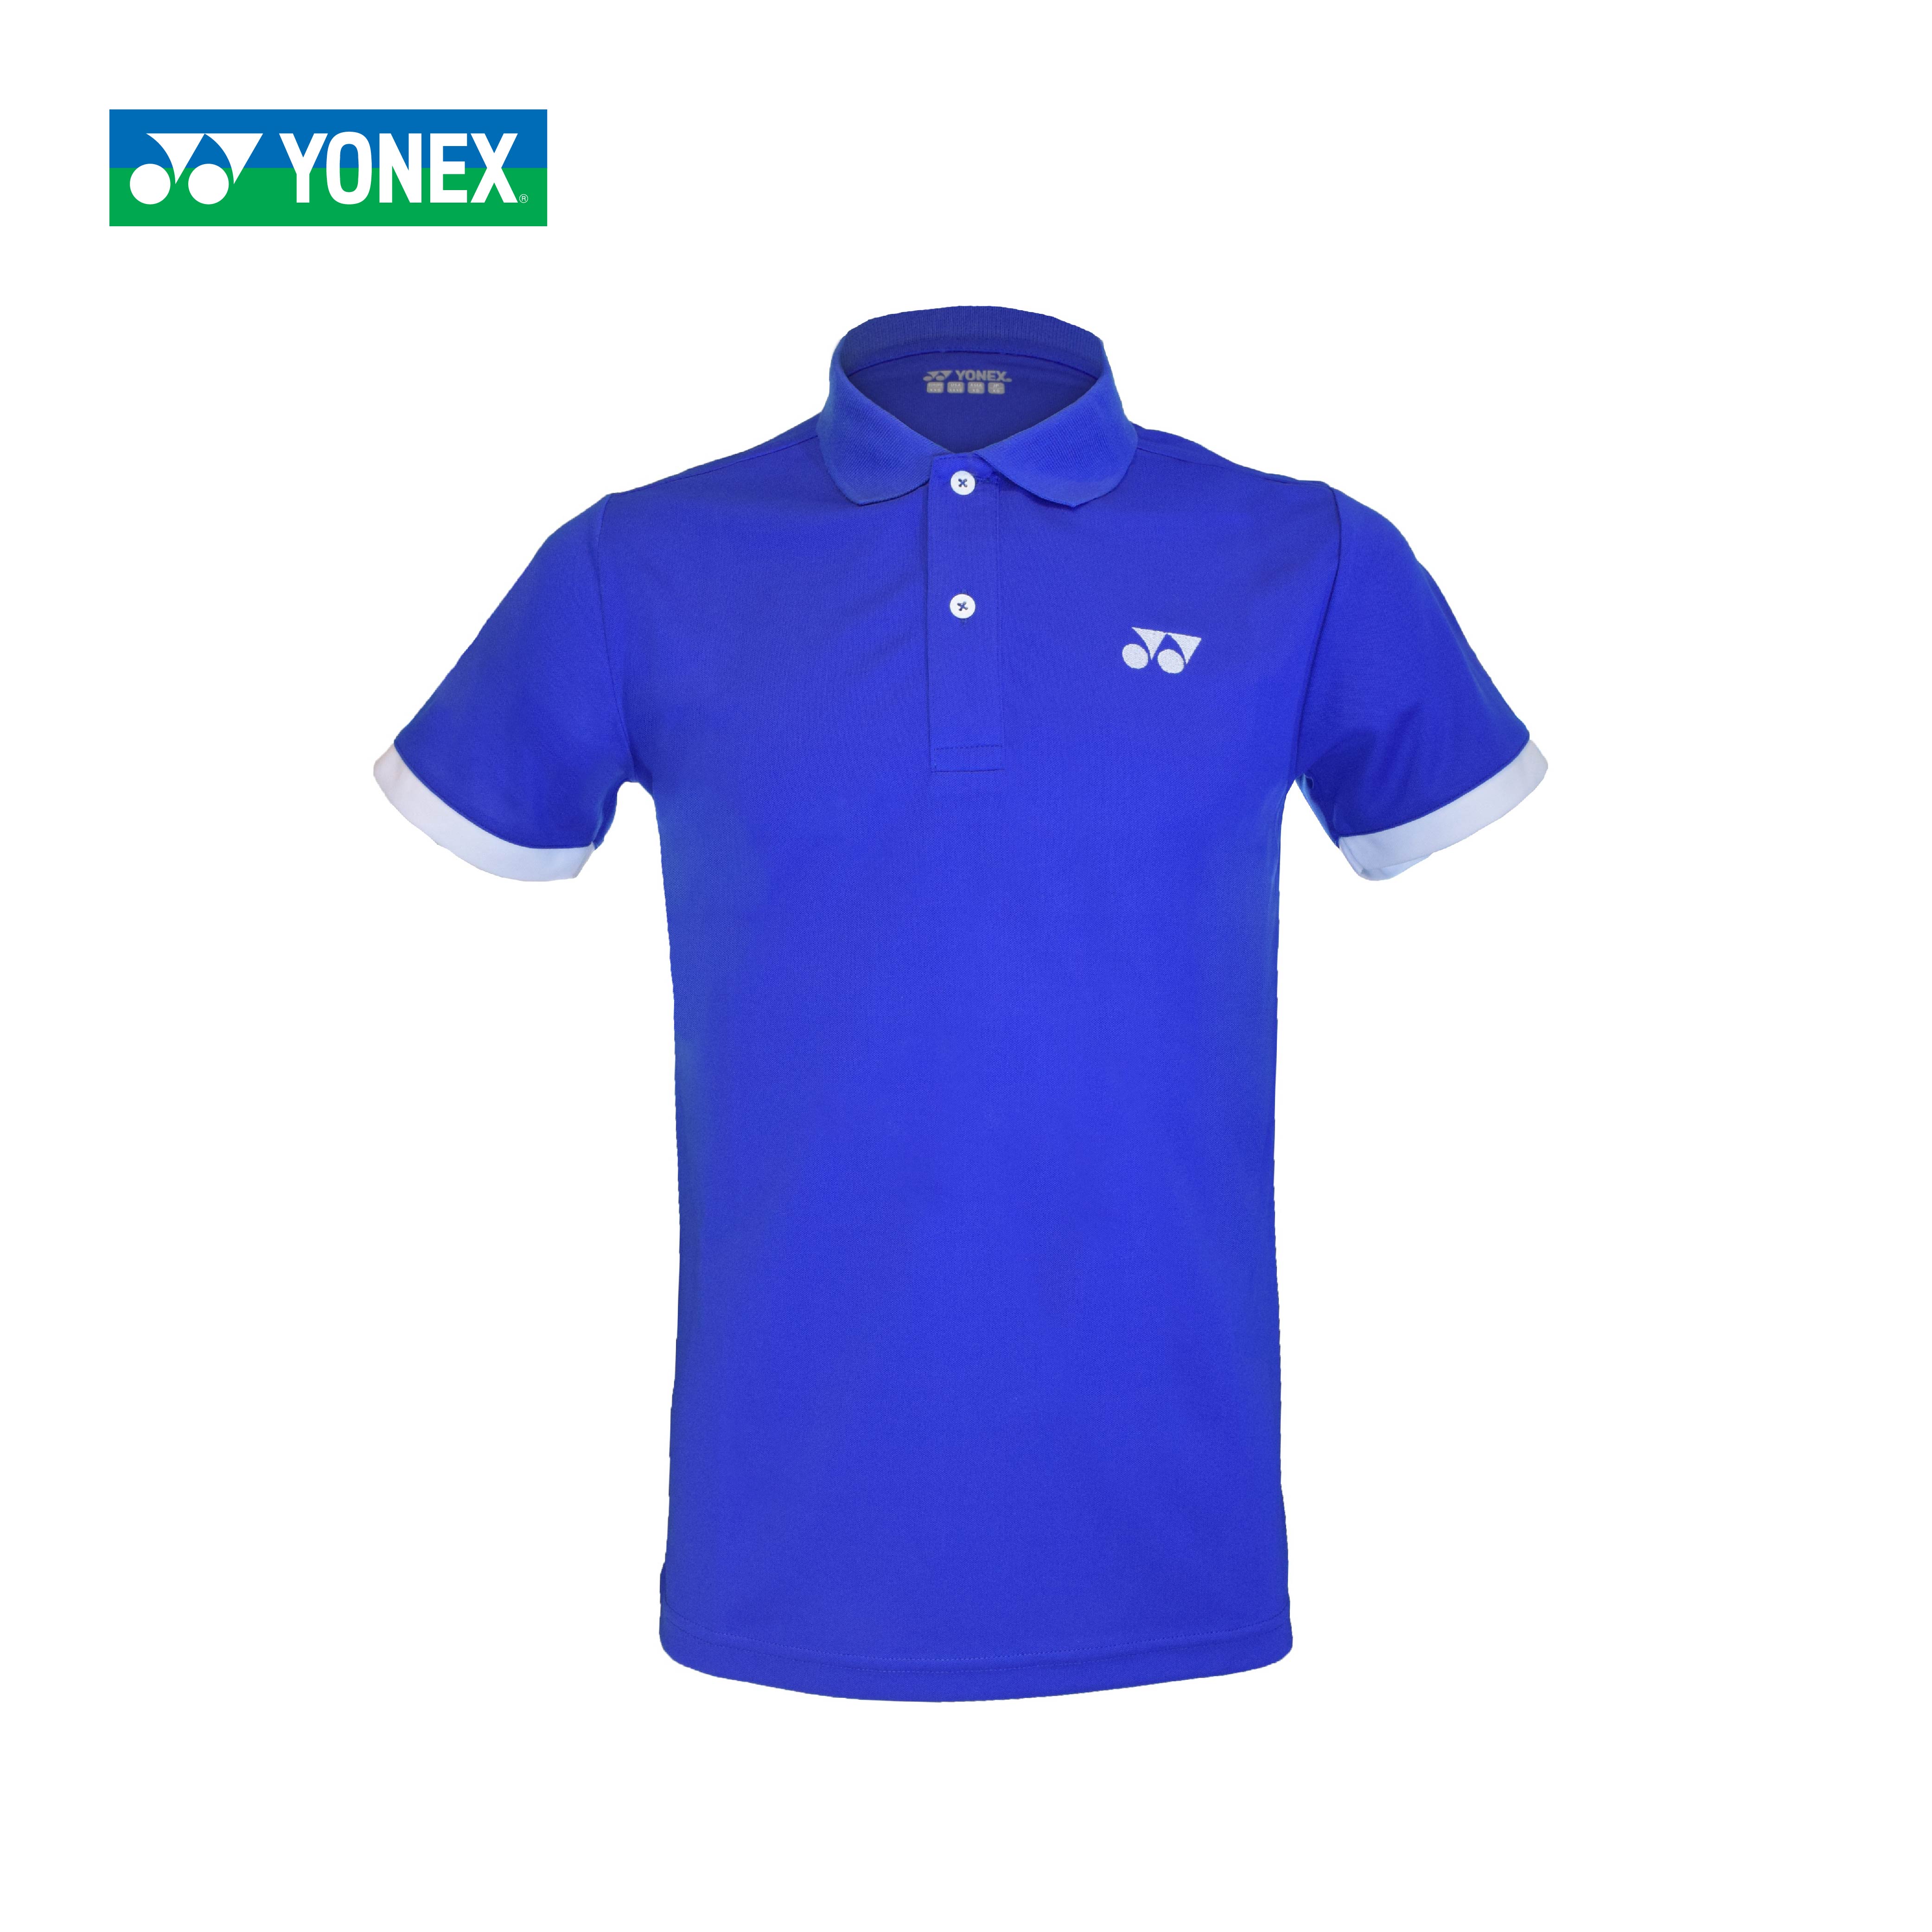 เสื้อโปโล YONEX MEN'S POLO SHIRT (22001 EX) เนื้อสัมผัสผ้าโพลีเอสเตอร์ ทำให้ระบายเหงื่อและความชื้นได้รวดเร็ว เป็นได้ทั้งชุดกีฬาและชุดลำลอง